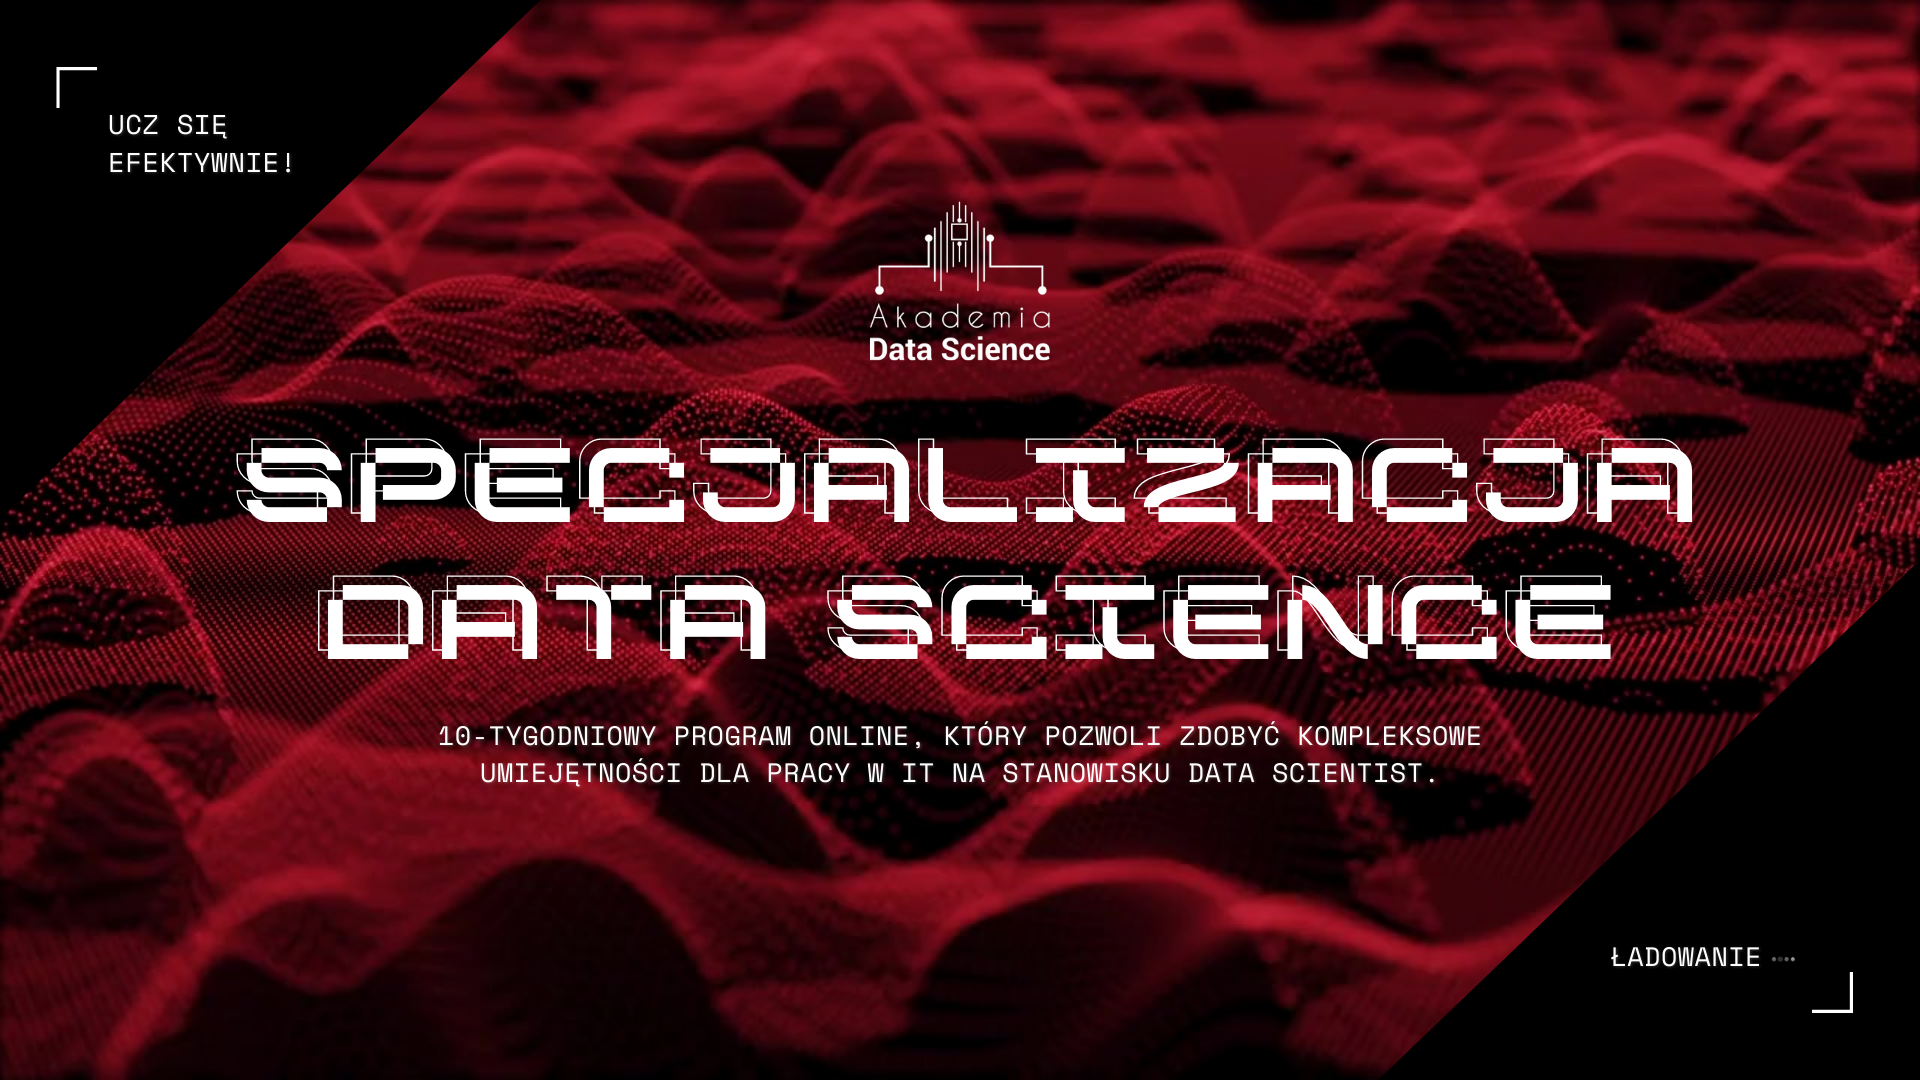 Specjalizacja Data Science